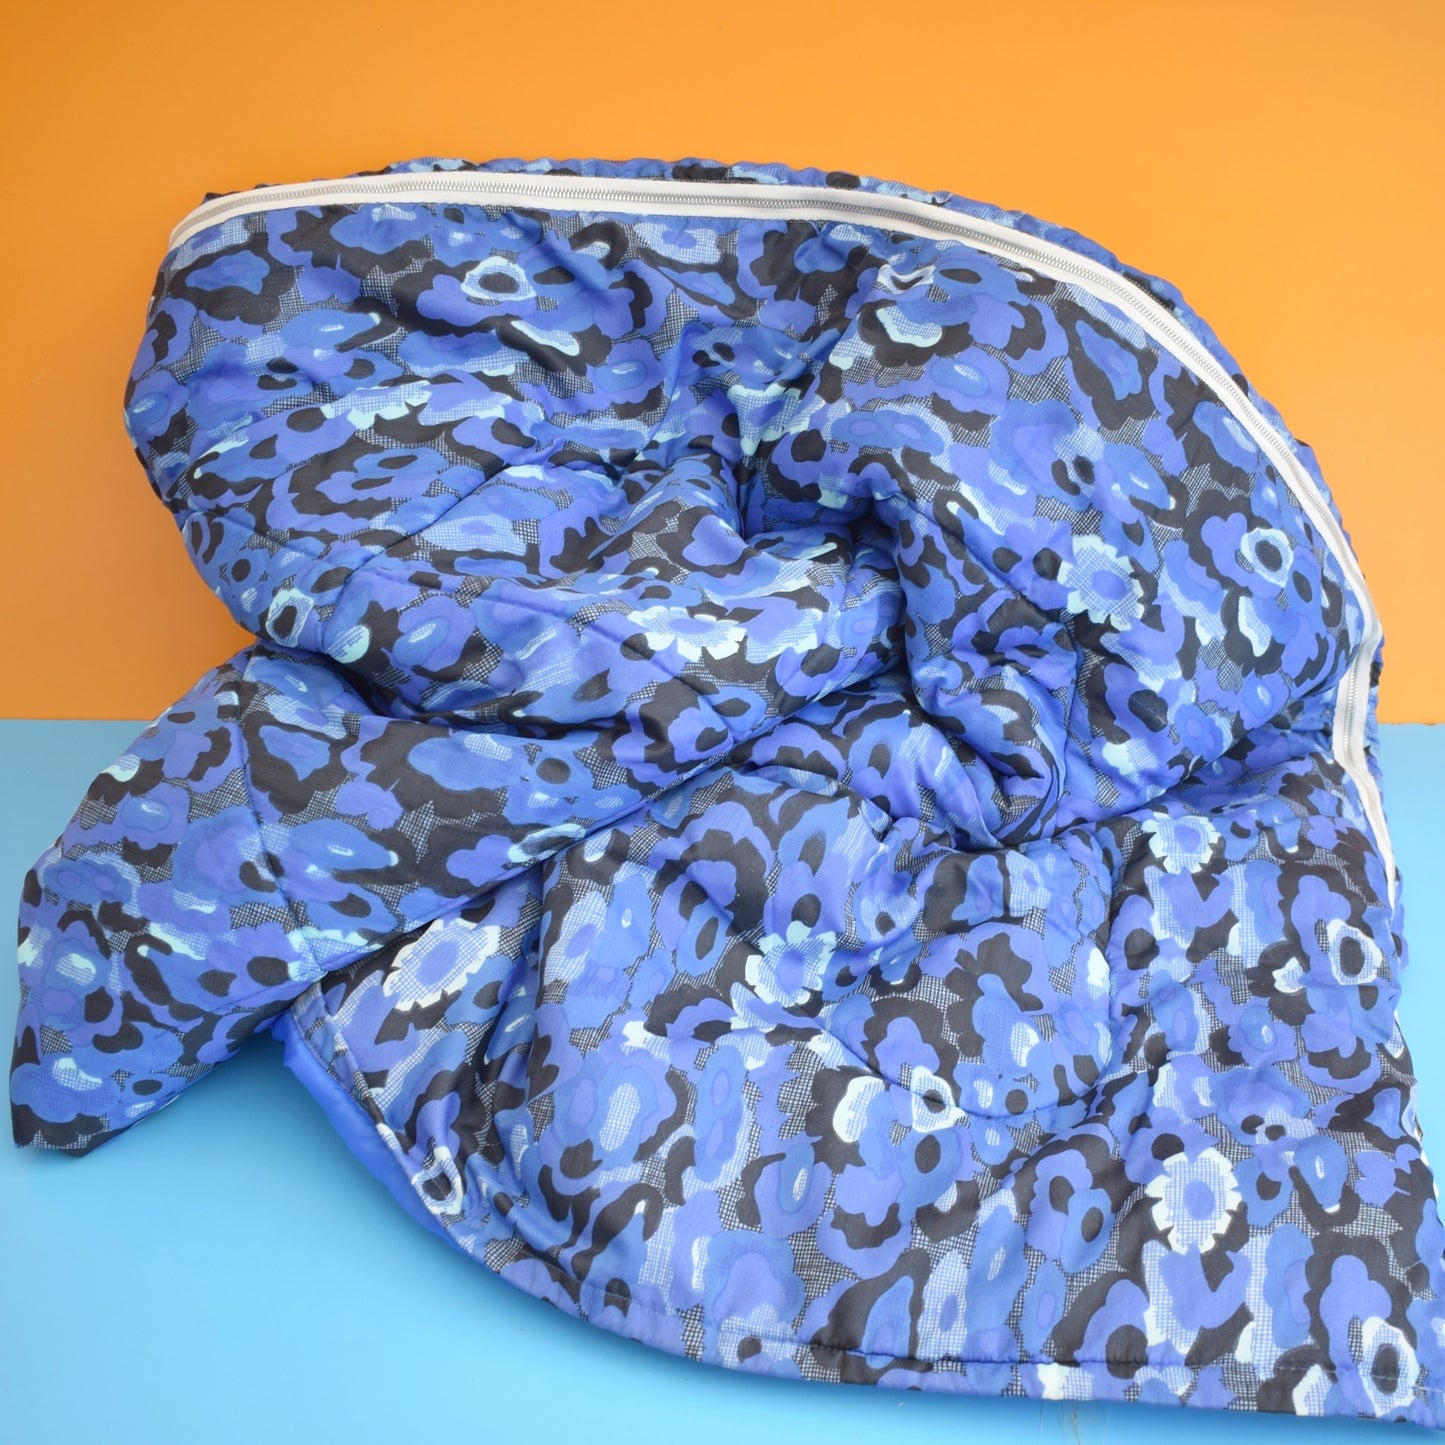 Vintage 1960s Sleeping Bags - Blue Splodge Flowers